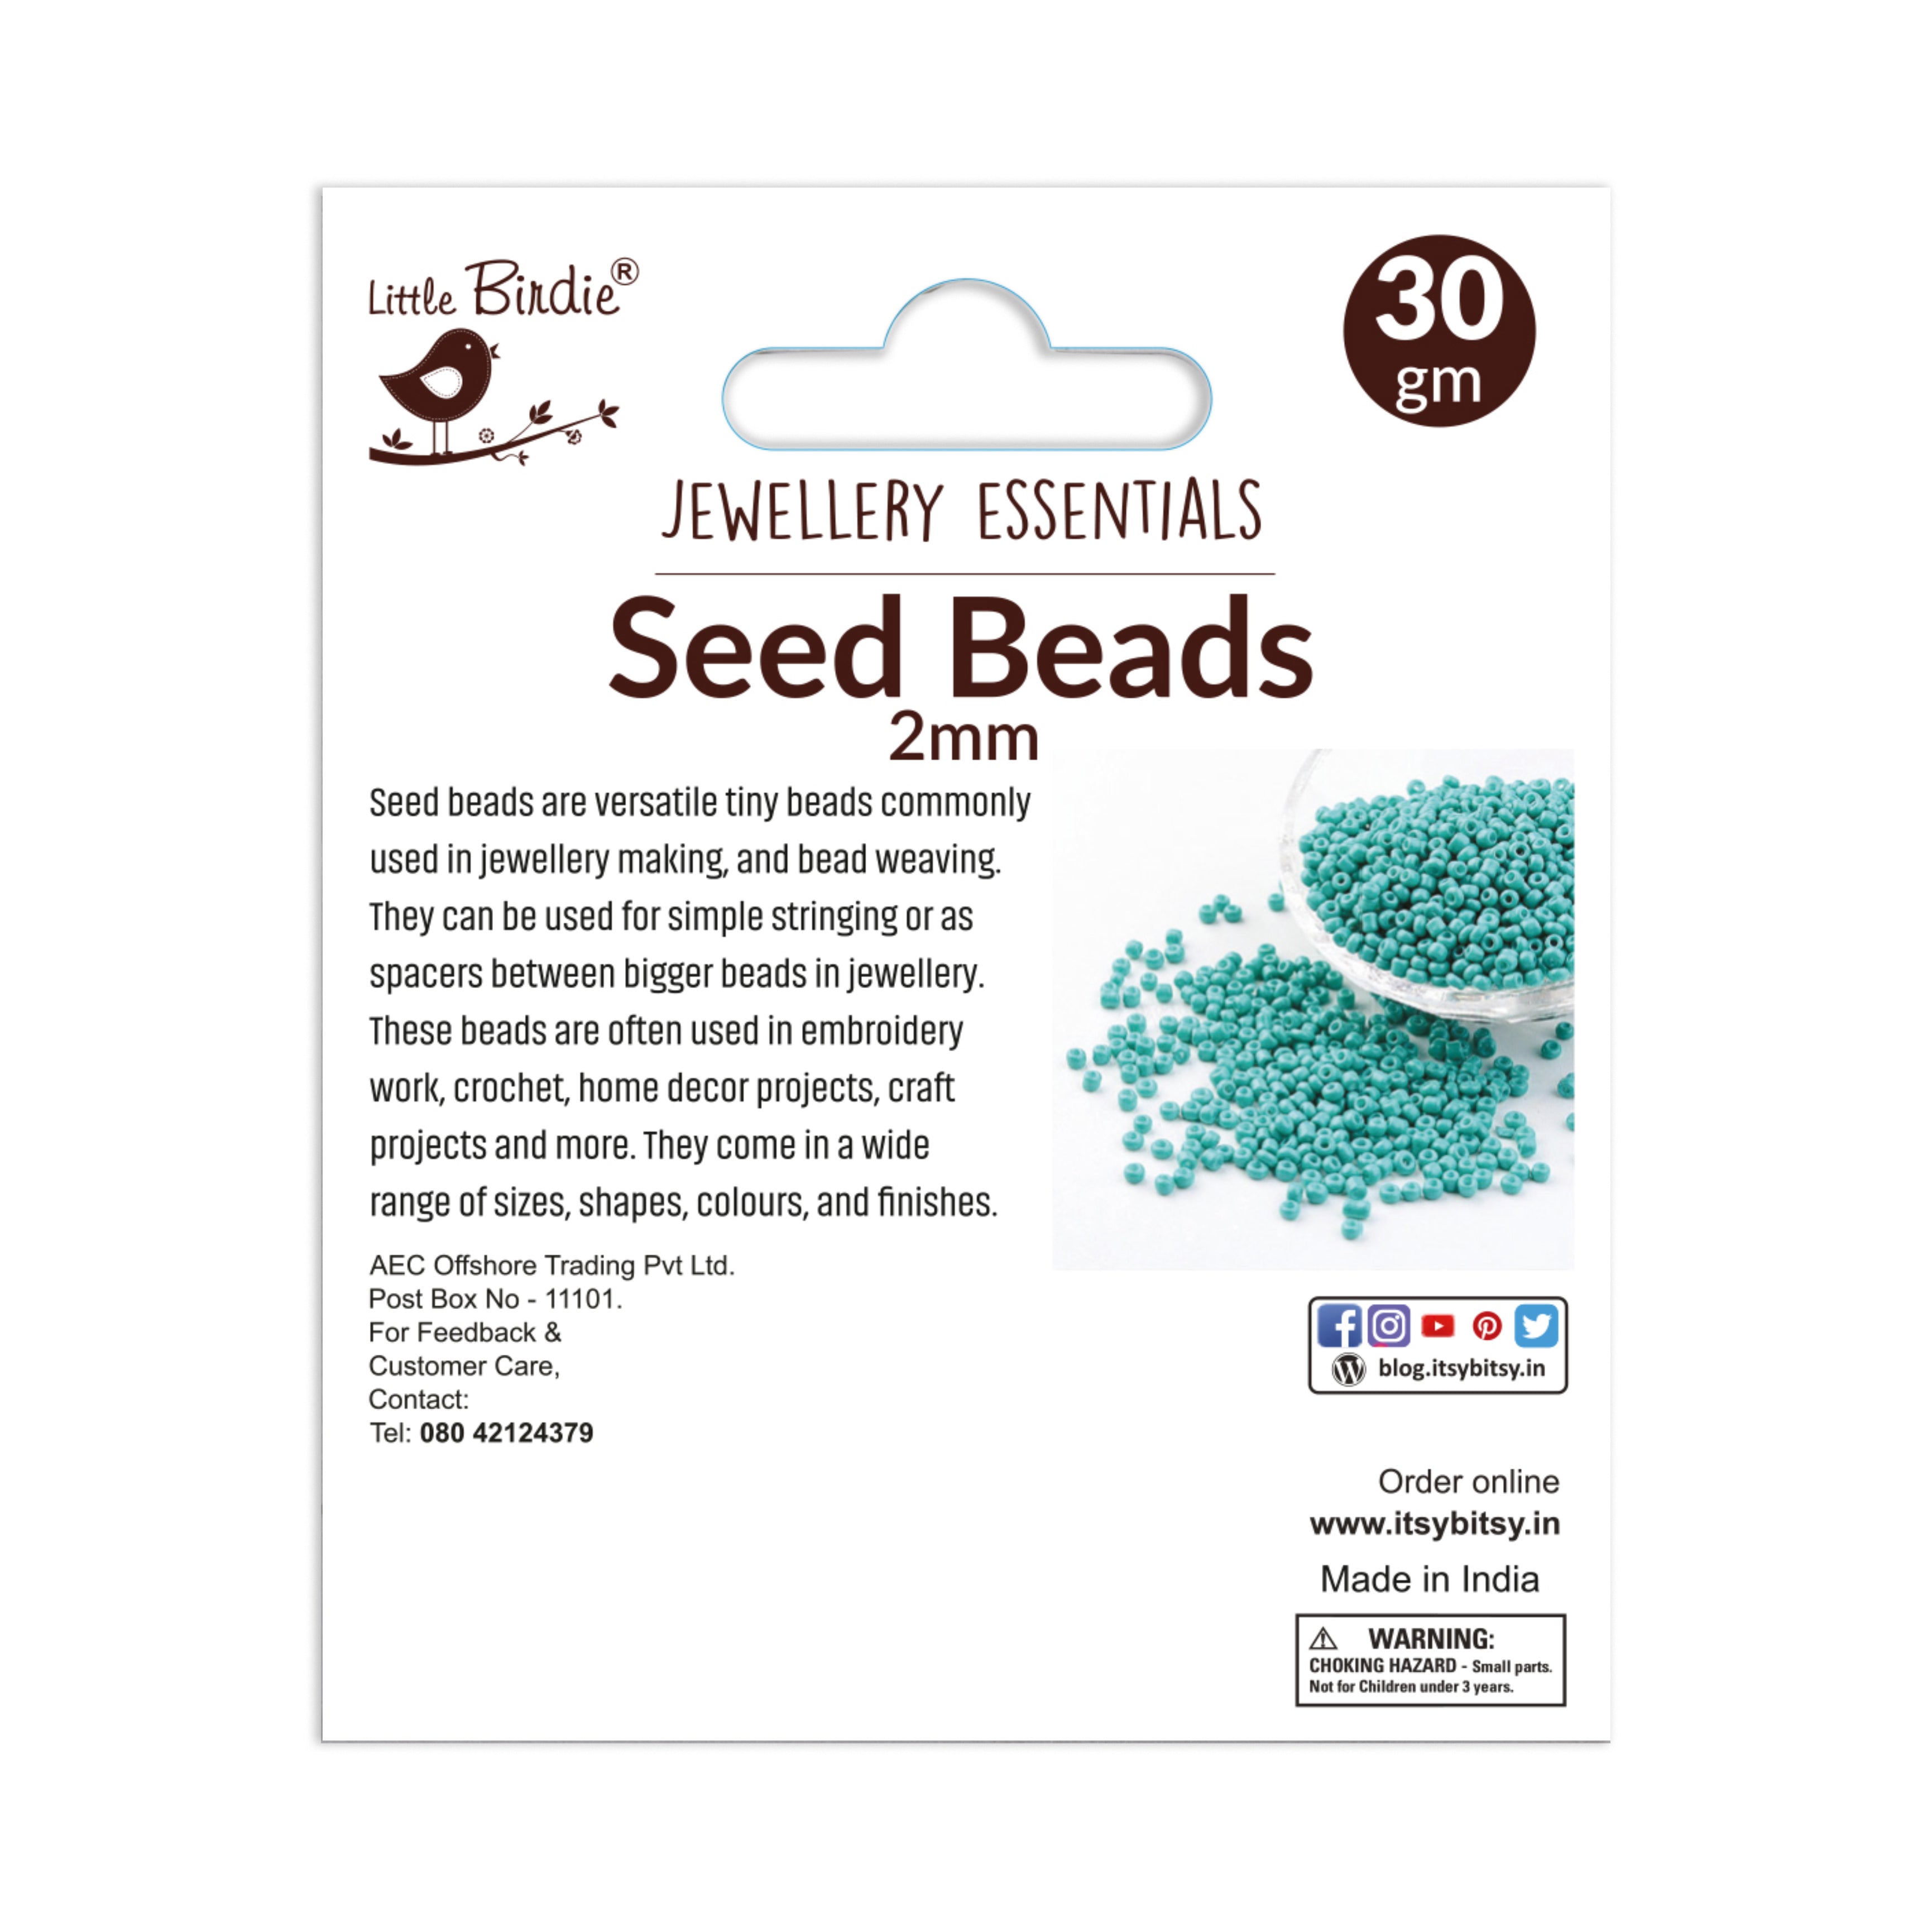 Seed Beads Black 30G 2MM Ib